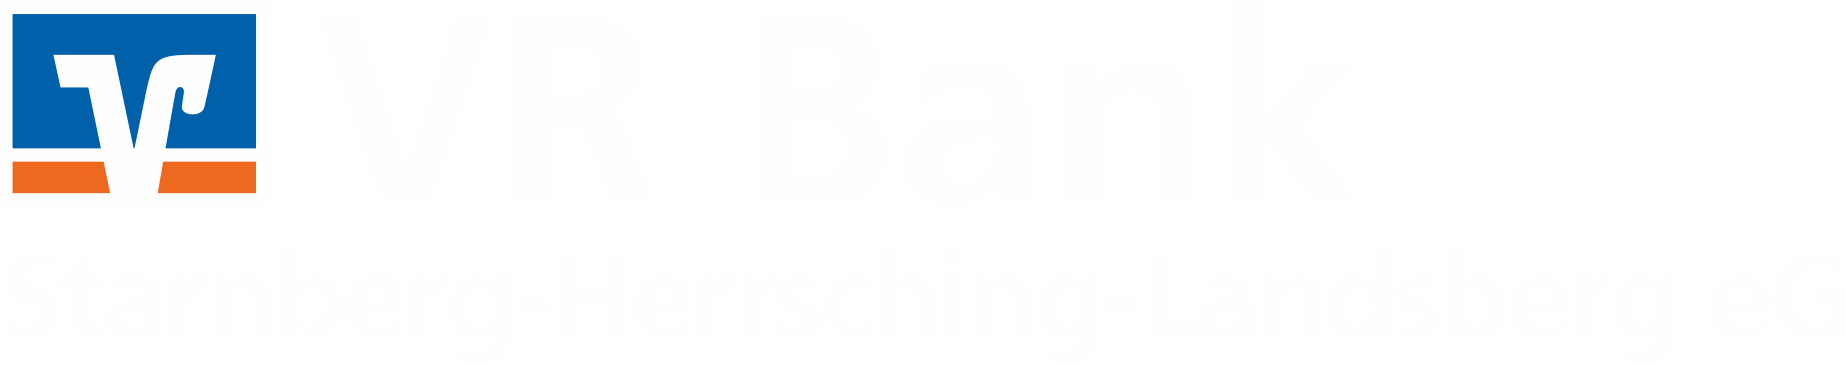 Firmenkundenbefragung VR Bank Starnberg-Herrsching-Landsberg eG